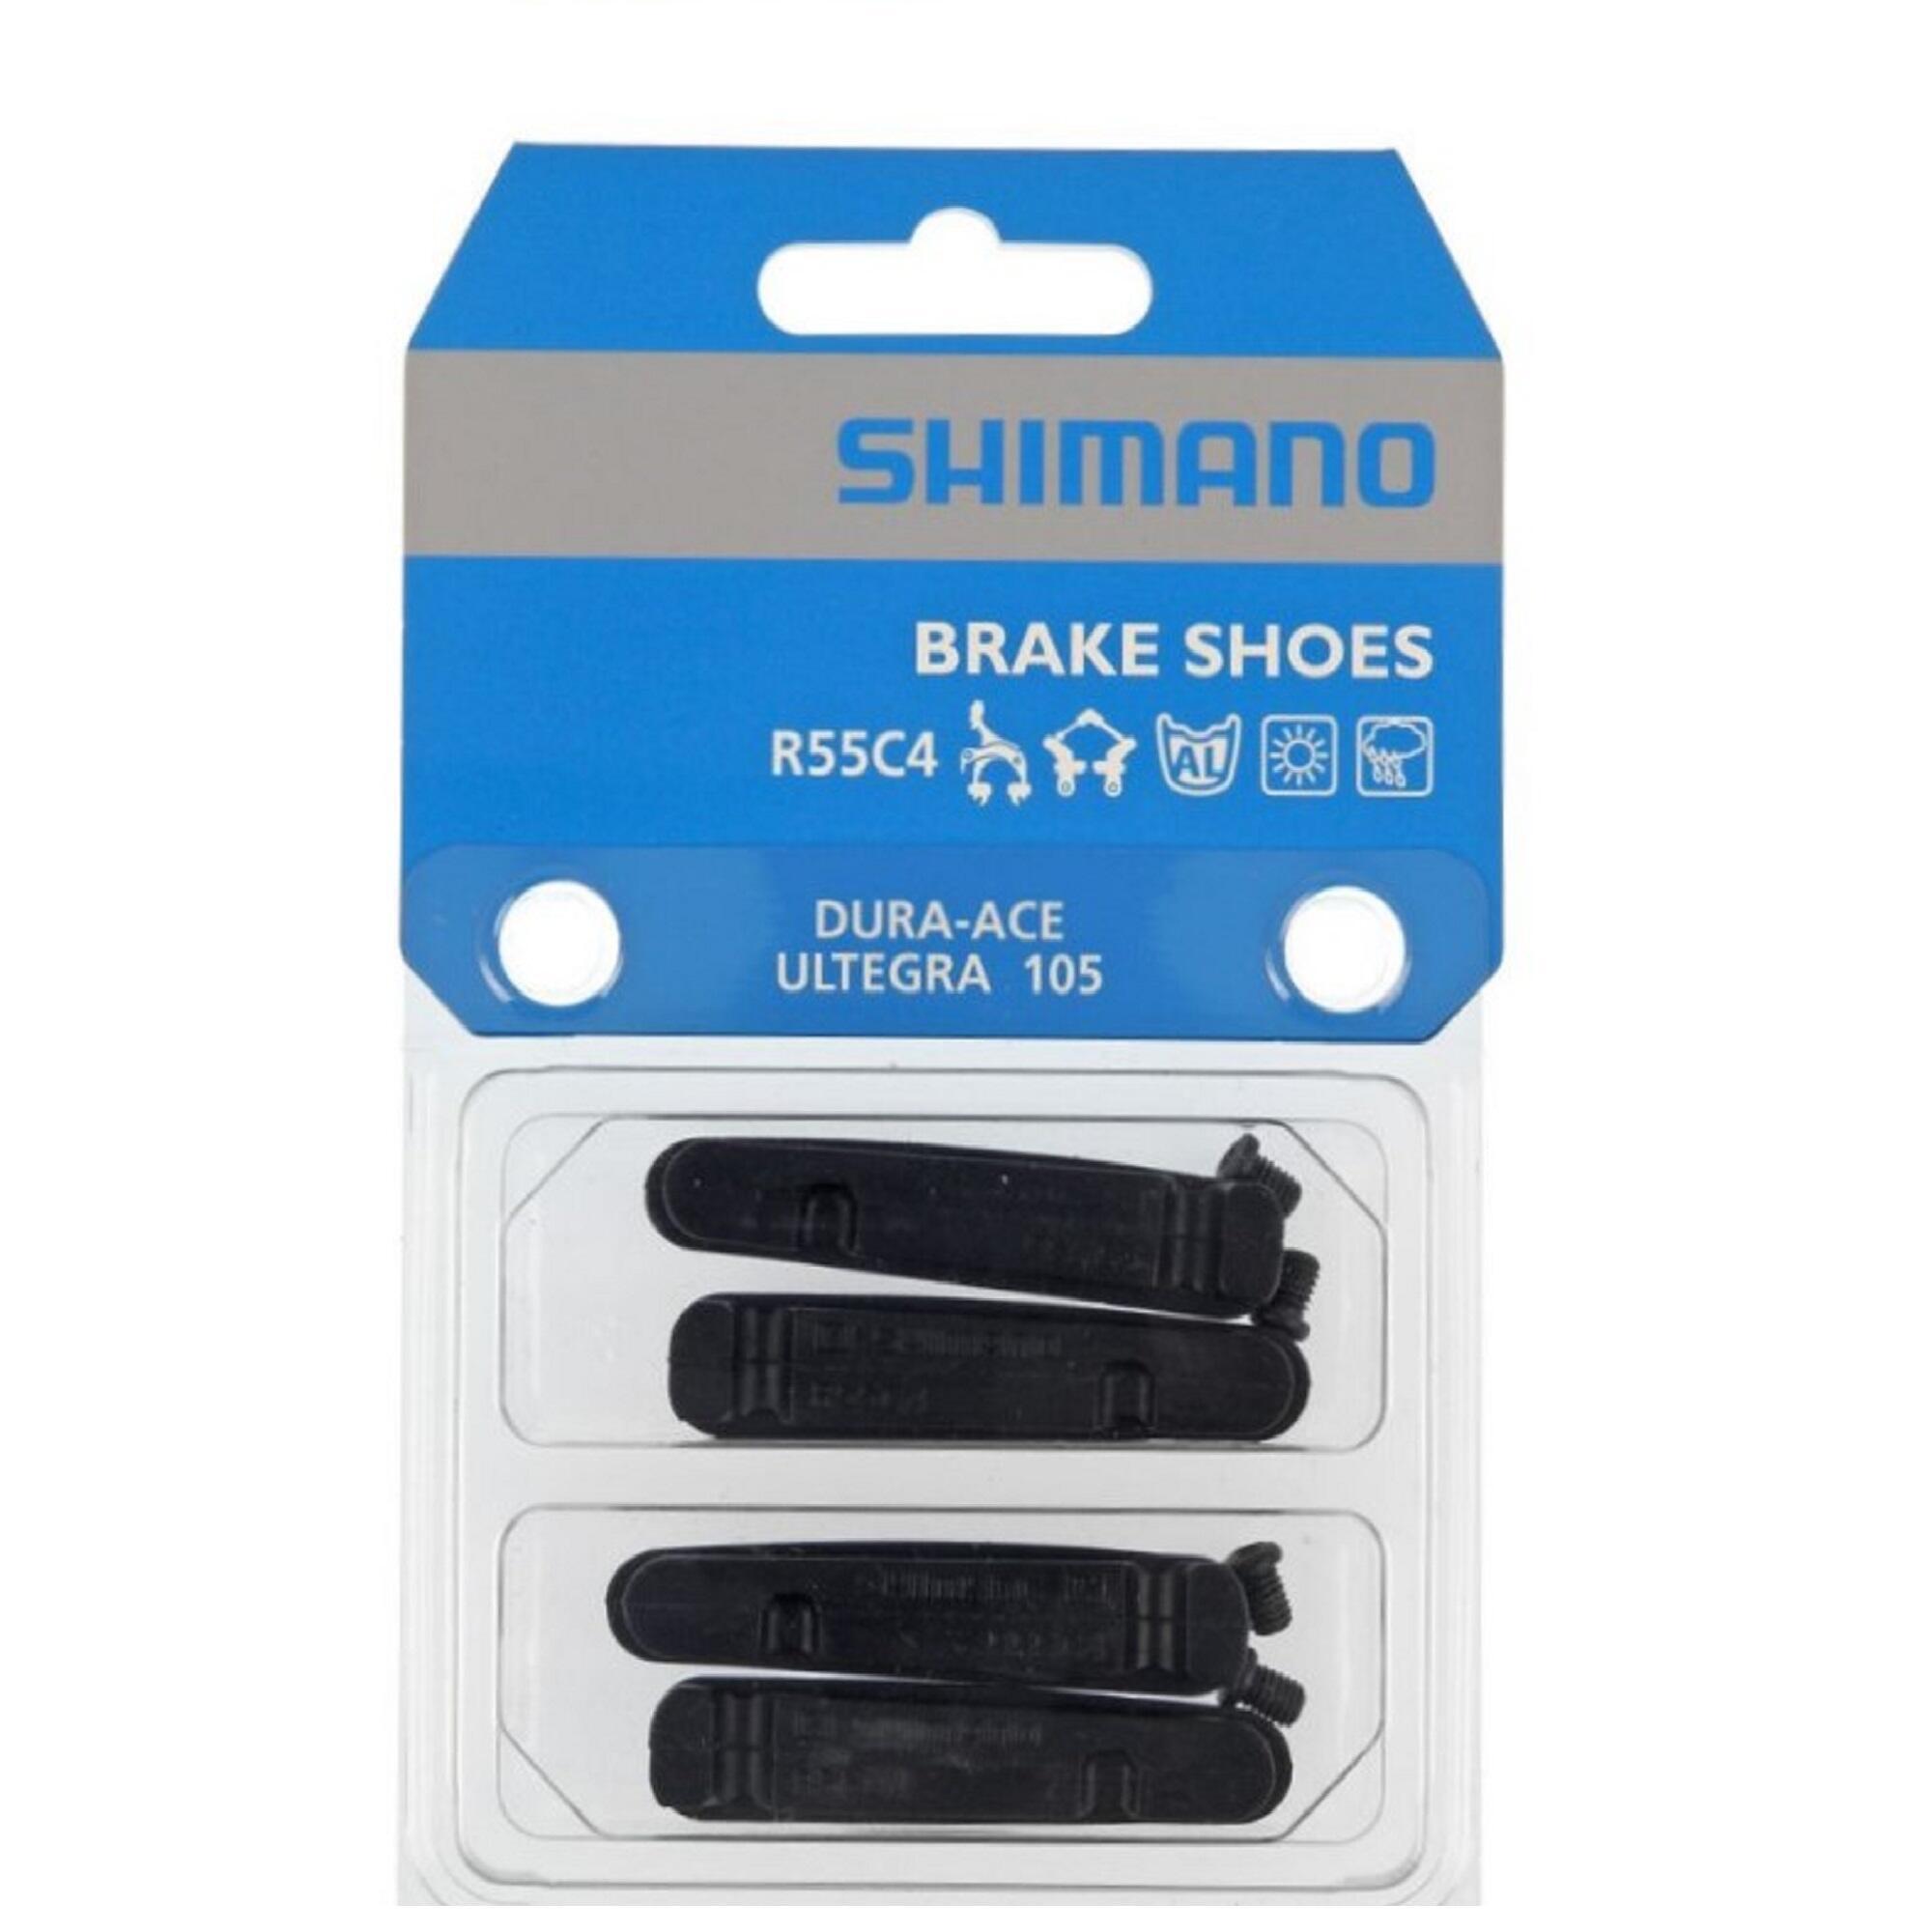 4 Тормозные колодки Shimano R55C4 Ultegra/Dura Ace цена и фото